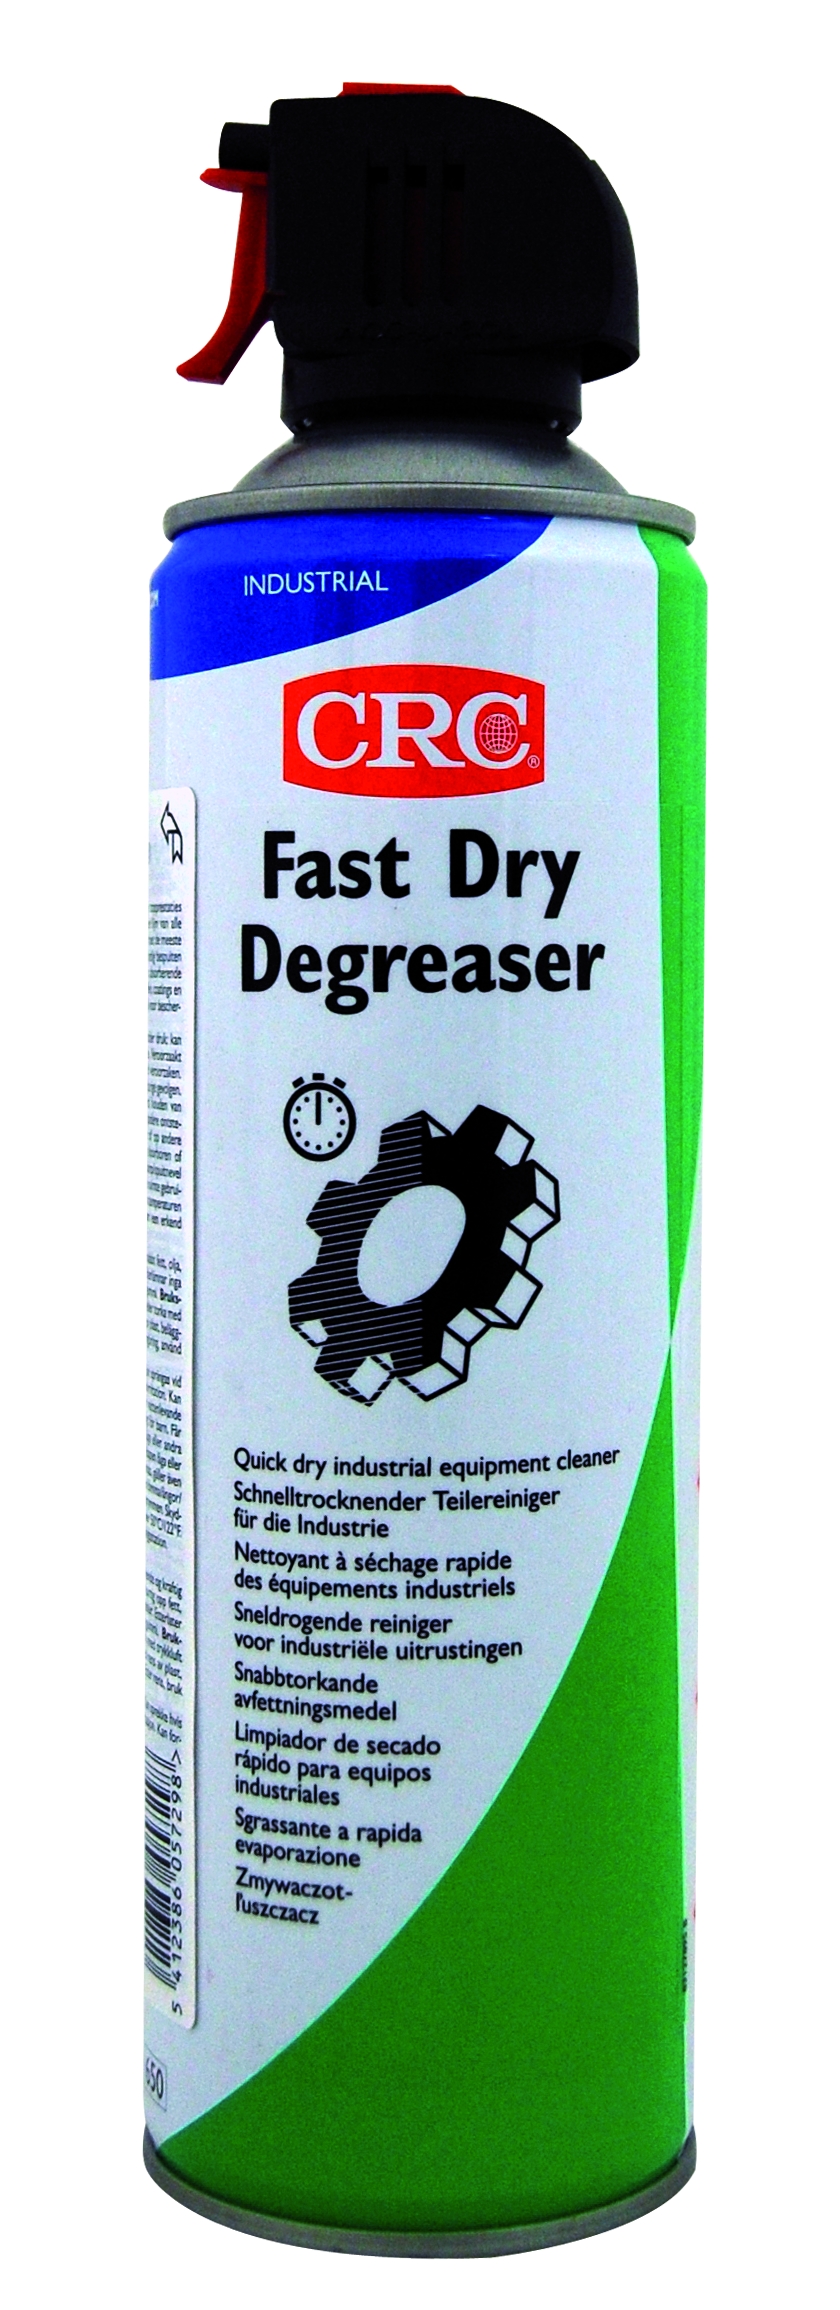 Le Fast Dry Degreaser : un dégraissant à séchage rapide propulsé au CO2 avec 95% de matière active